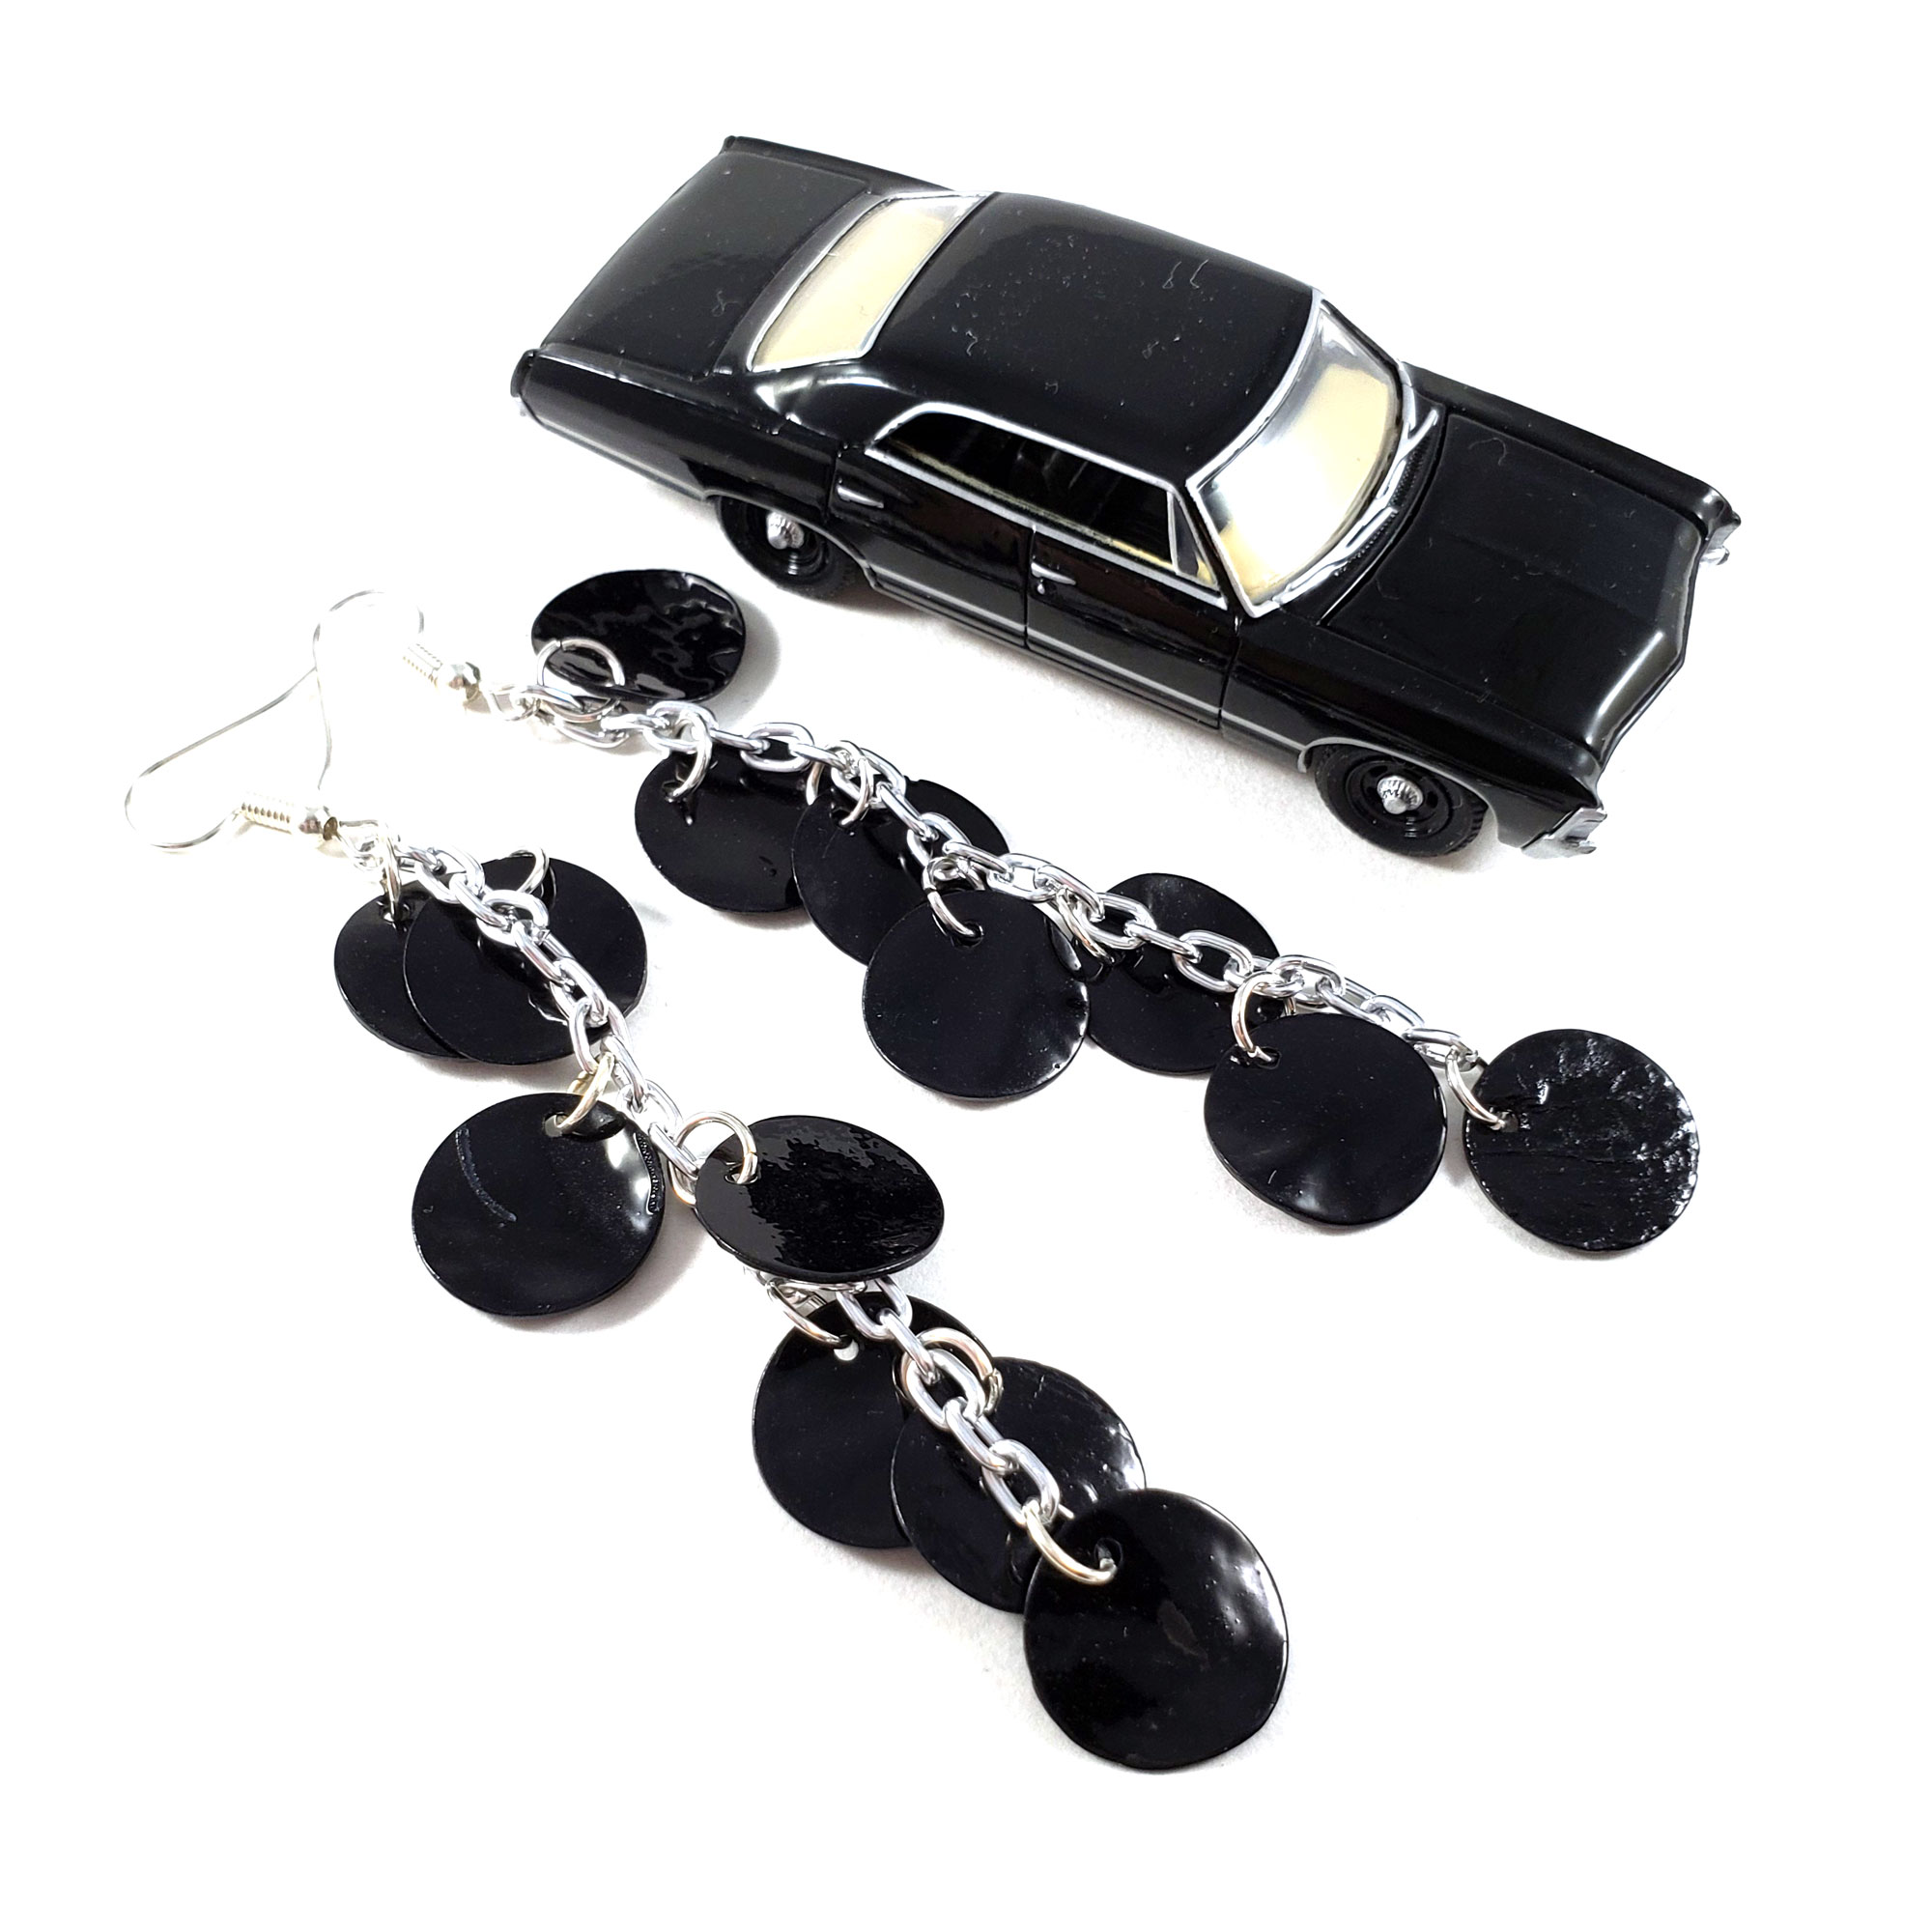 Dragon Scale Earrings in Black by Wilde Designs